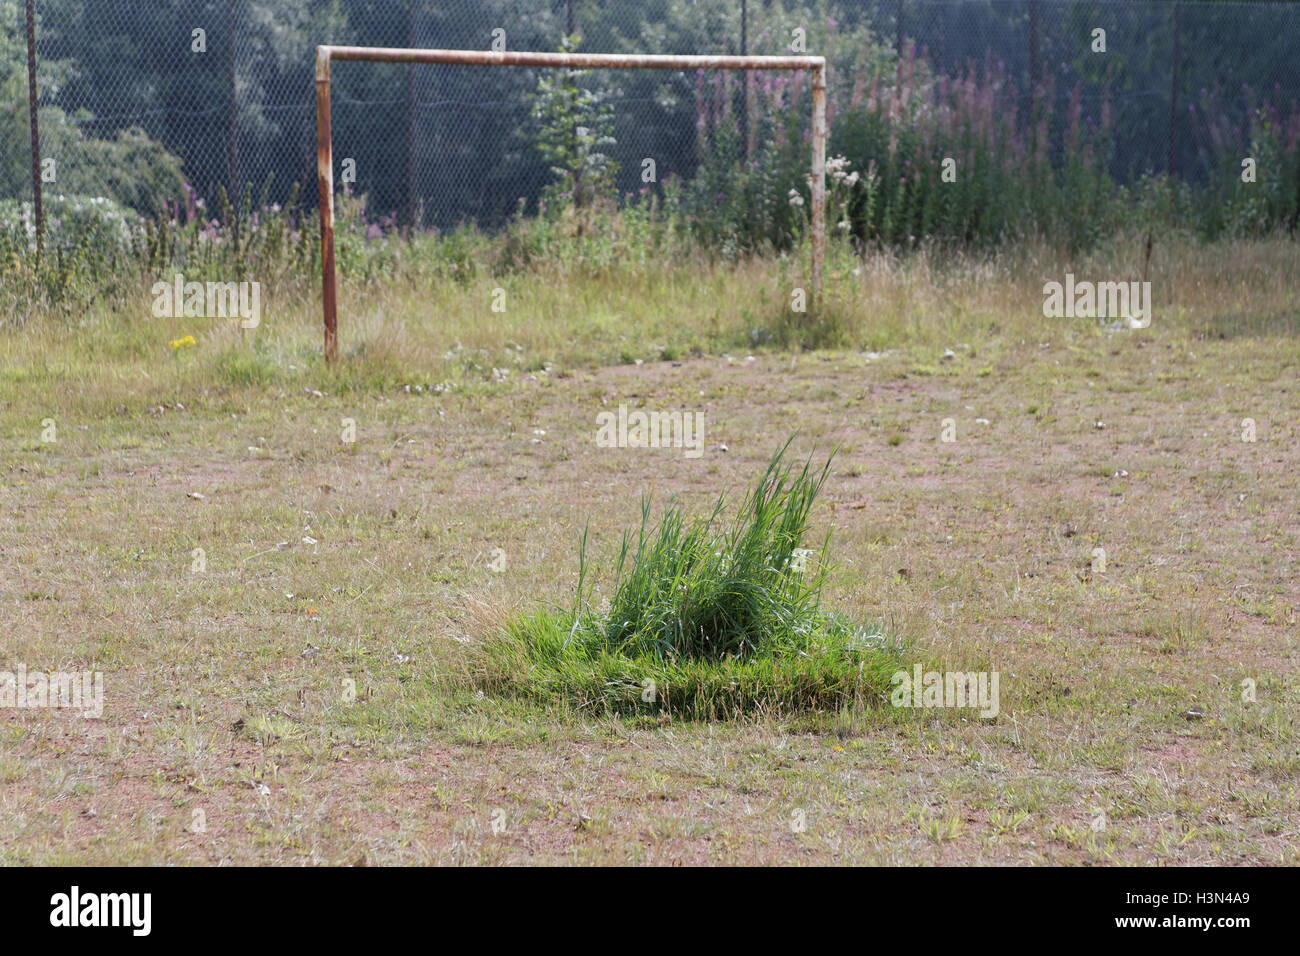 Muertos de fútbol o fútbol desvencijado vetustos y cubierto de hierba simbólico tono field goal puestos Foto de stock